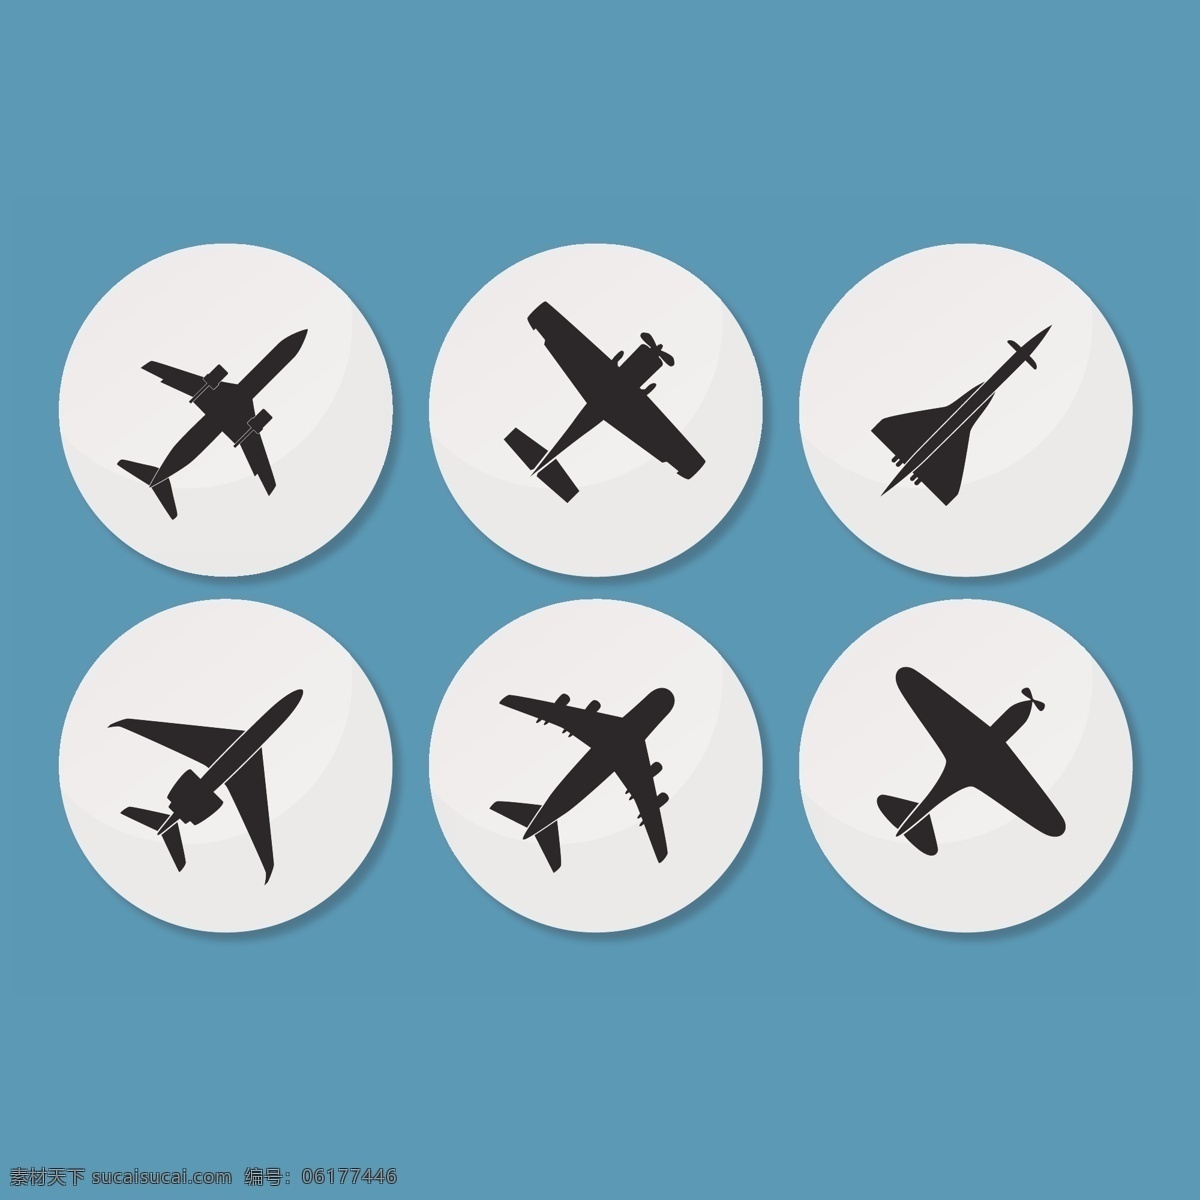 黑色 圆形 飞机 图标 图标设计 蓝色 黑色飞机图标 青色 天蓝色